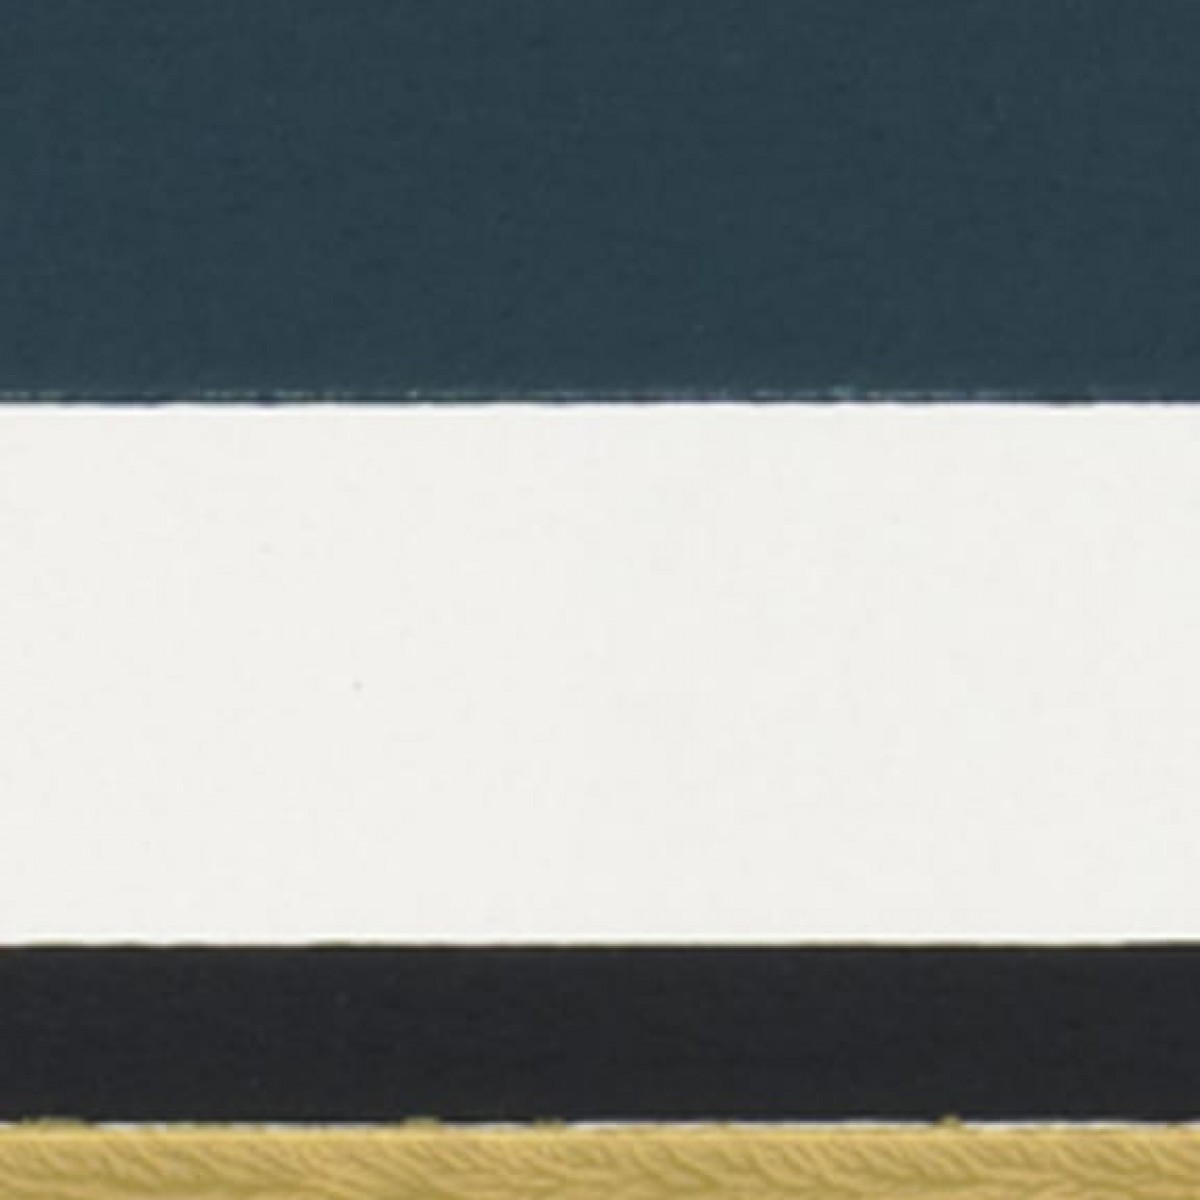 Tapet Sandberg SND-900-87. Conține culorile: Albastru, Albastru-Gri, Galben, Galben Ocru, Alb, Alb Semnal, Verde, Verde Stuf, Violet, Violet Perlă-Afină